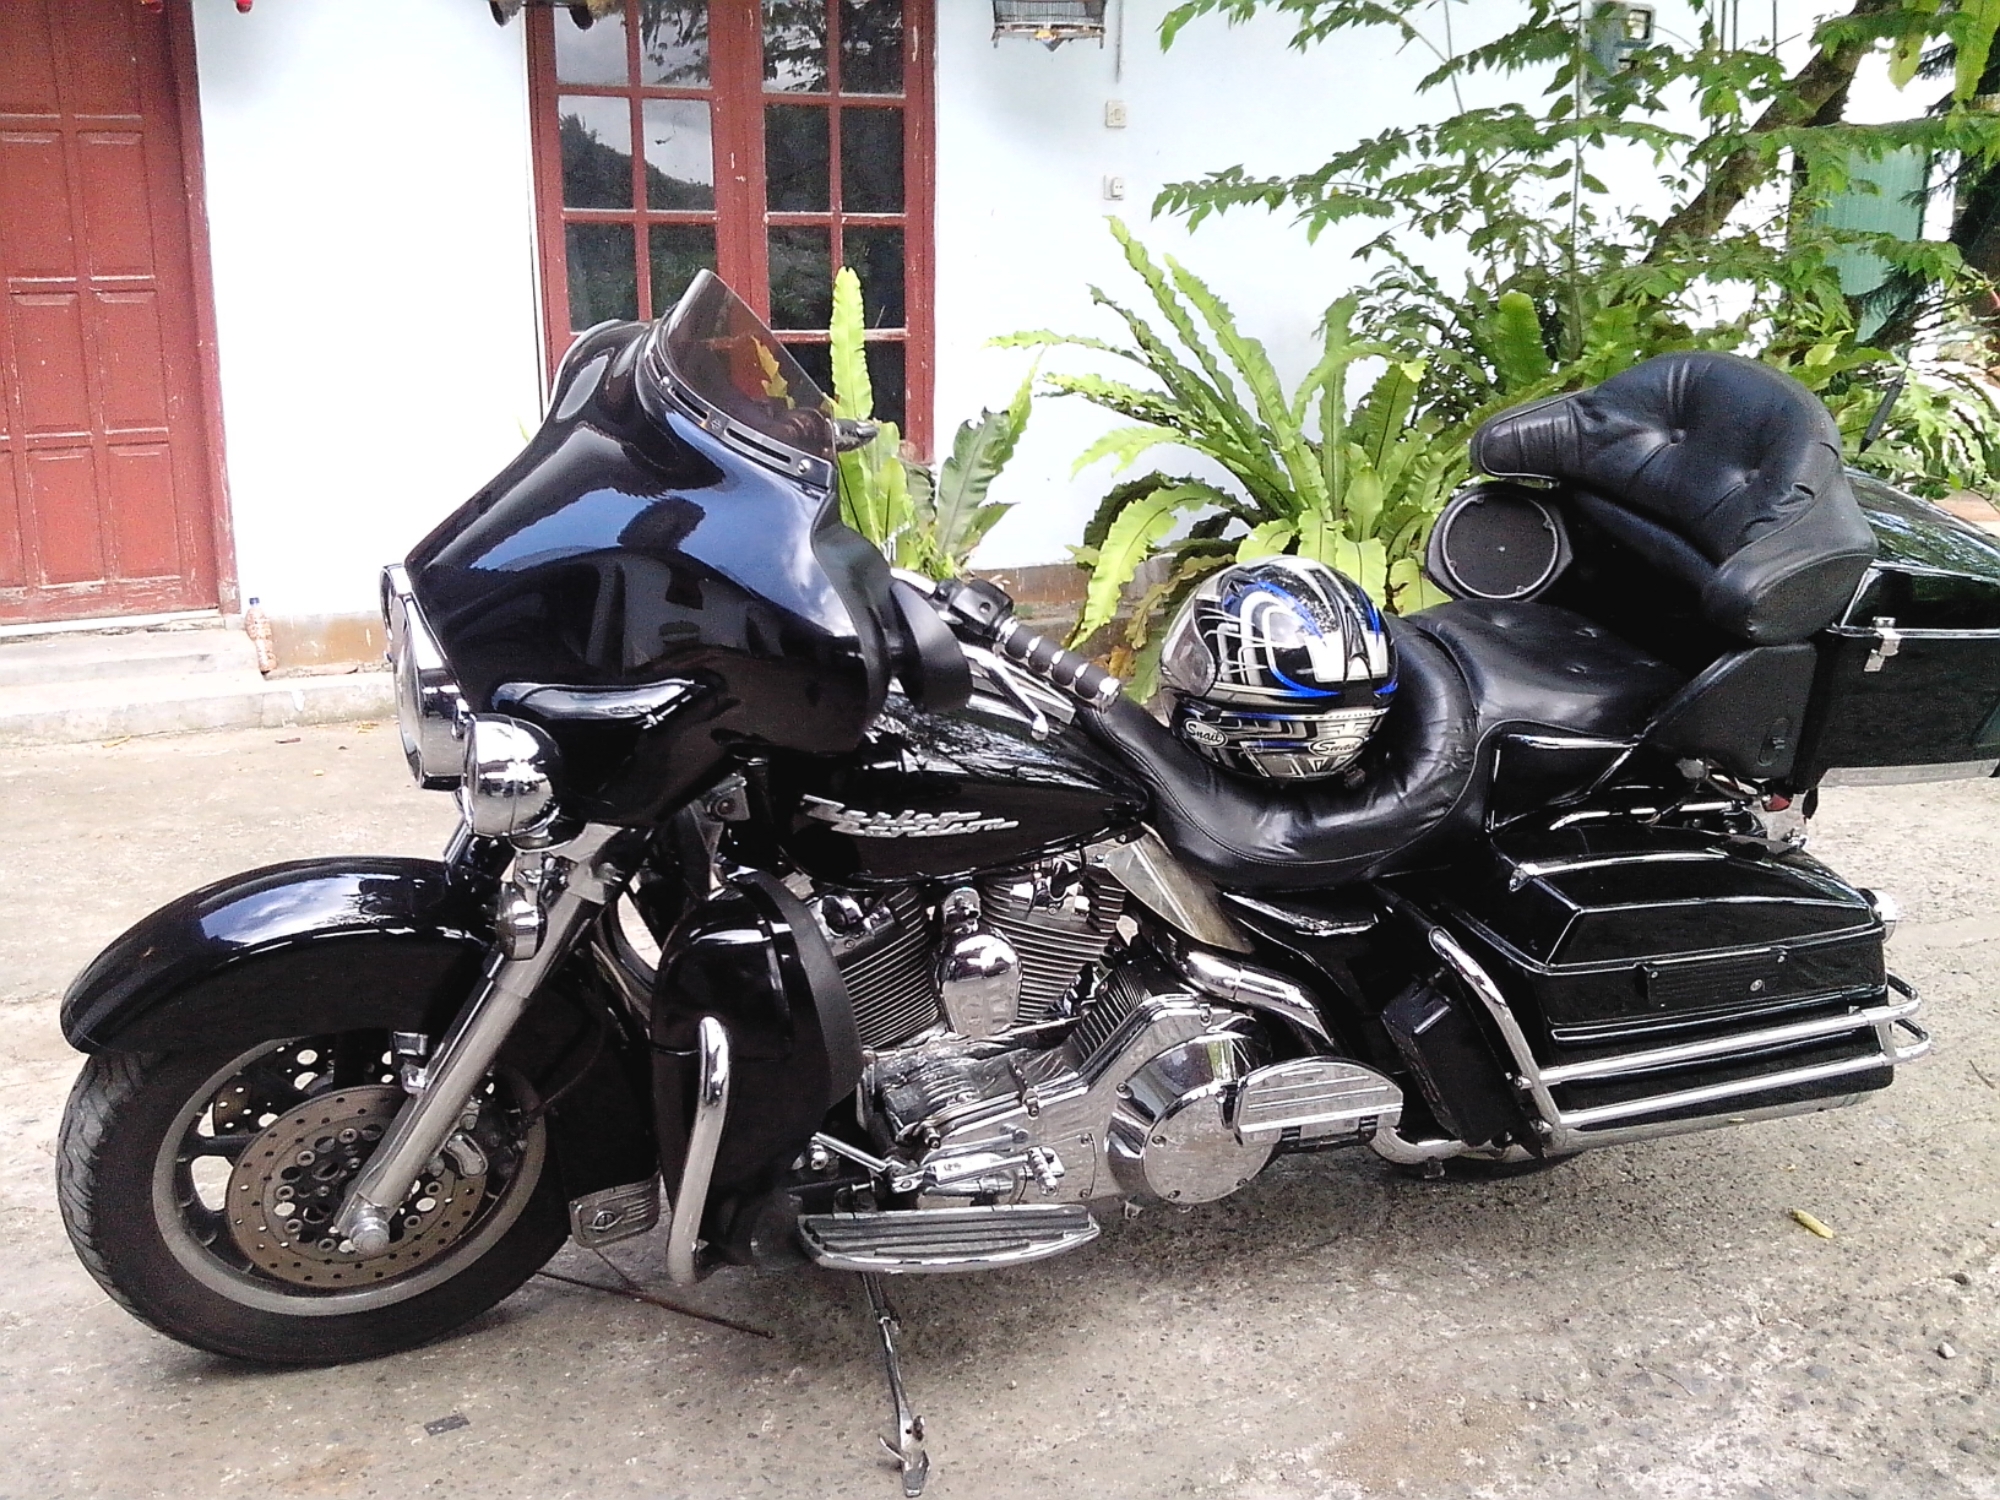 Iseng Nyobain Singkat Harley Davidson Ultra Classic Azizyhorees